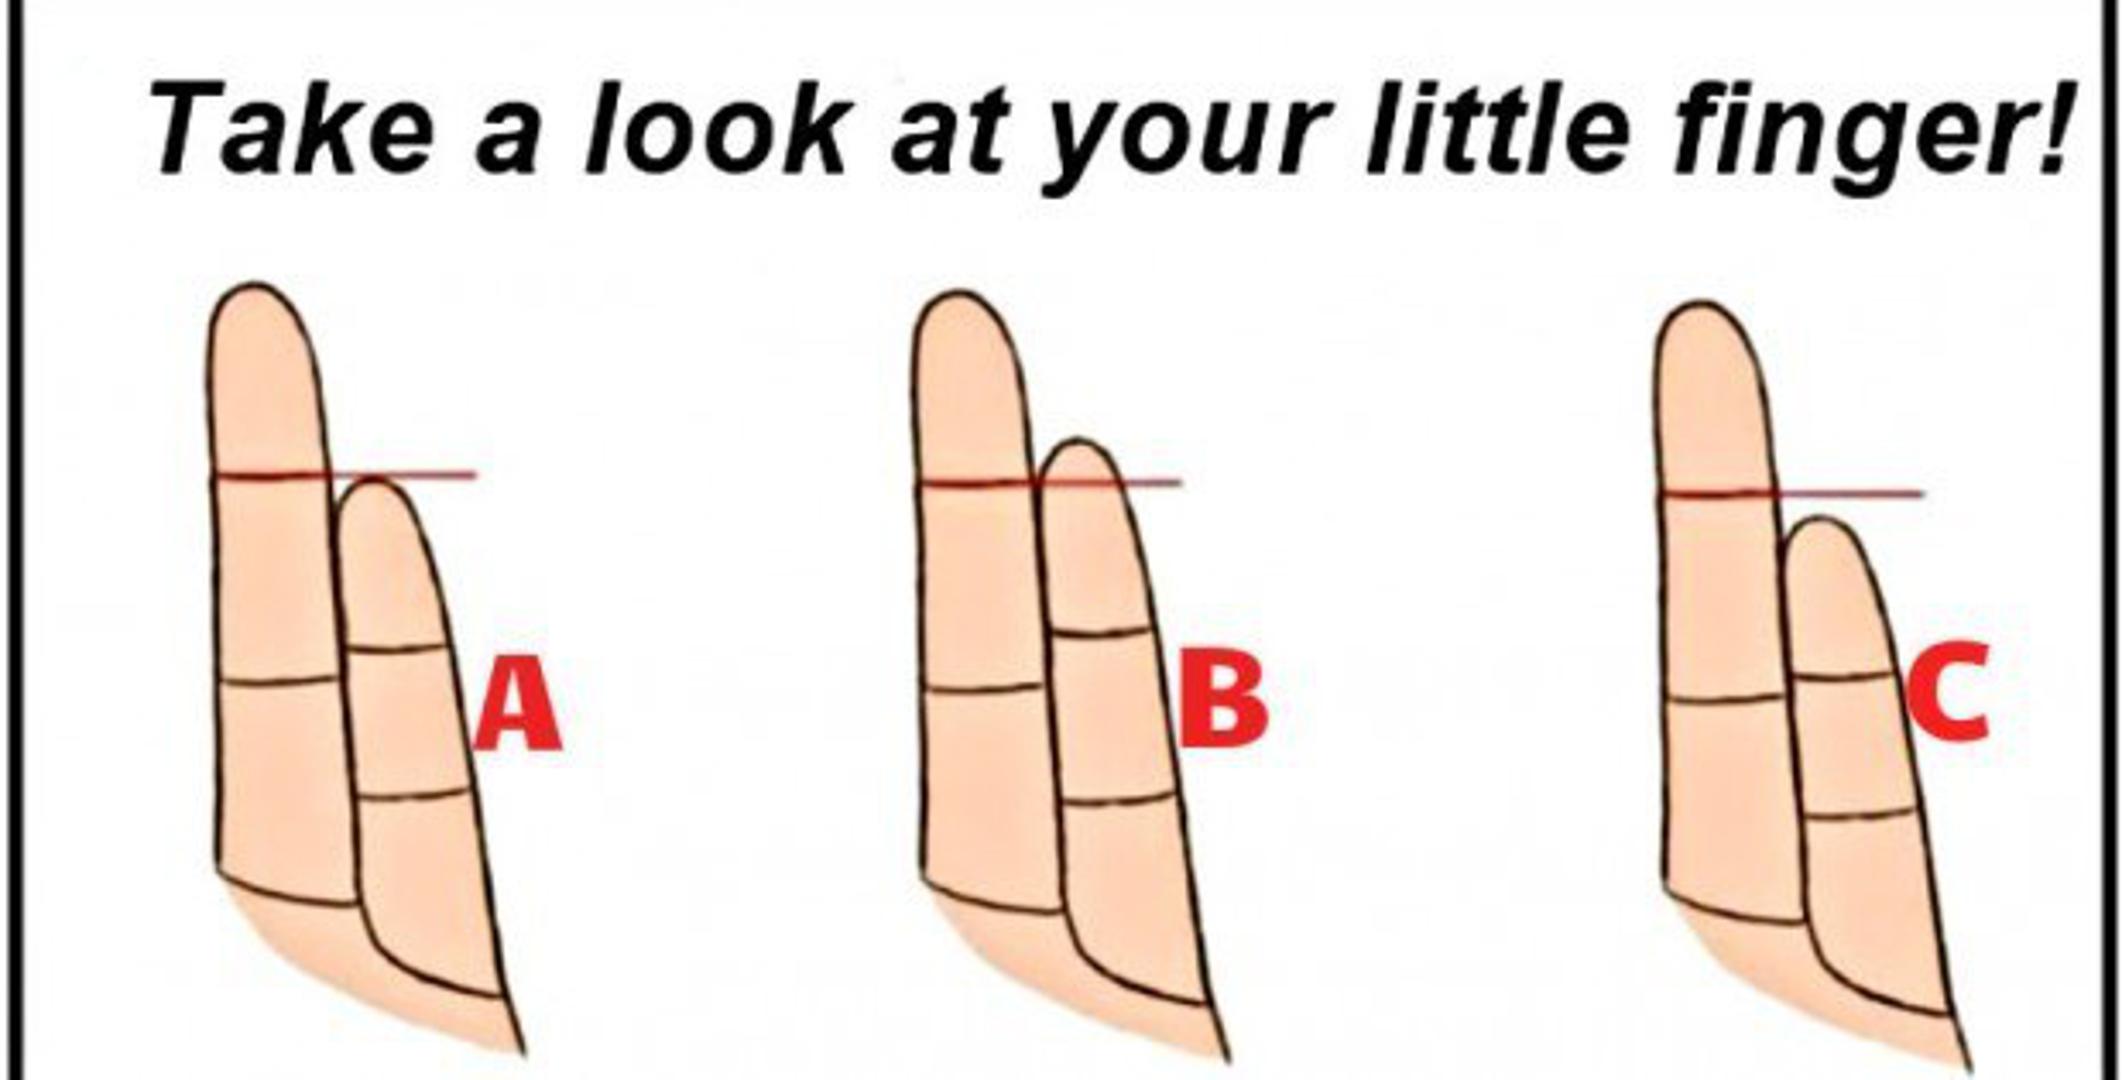 Jeste li se ikada zapitali jesu li vaši prsti na rukama "prave" duljine? Pogledajte u svoj mali prst i usporedite ga s duljinom prstenjaka i otkrijte u koju kategoriju pripadate i što to otkriva o vama. 